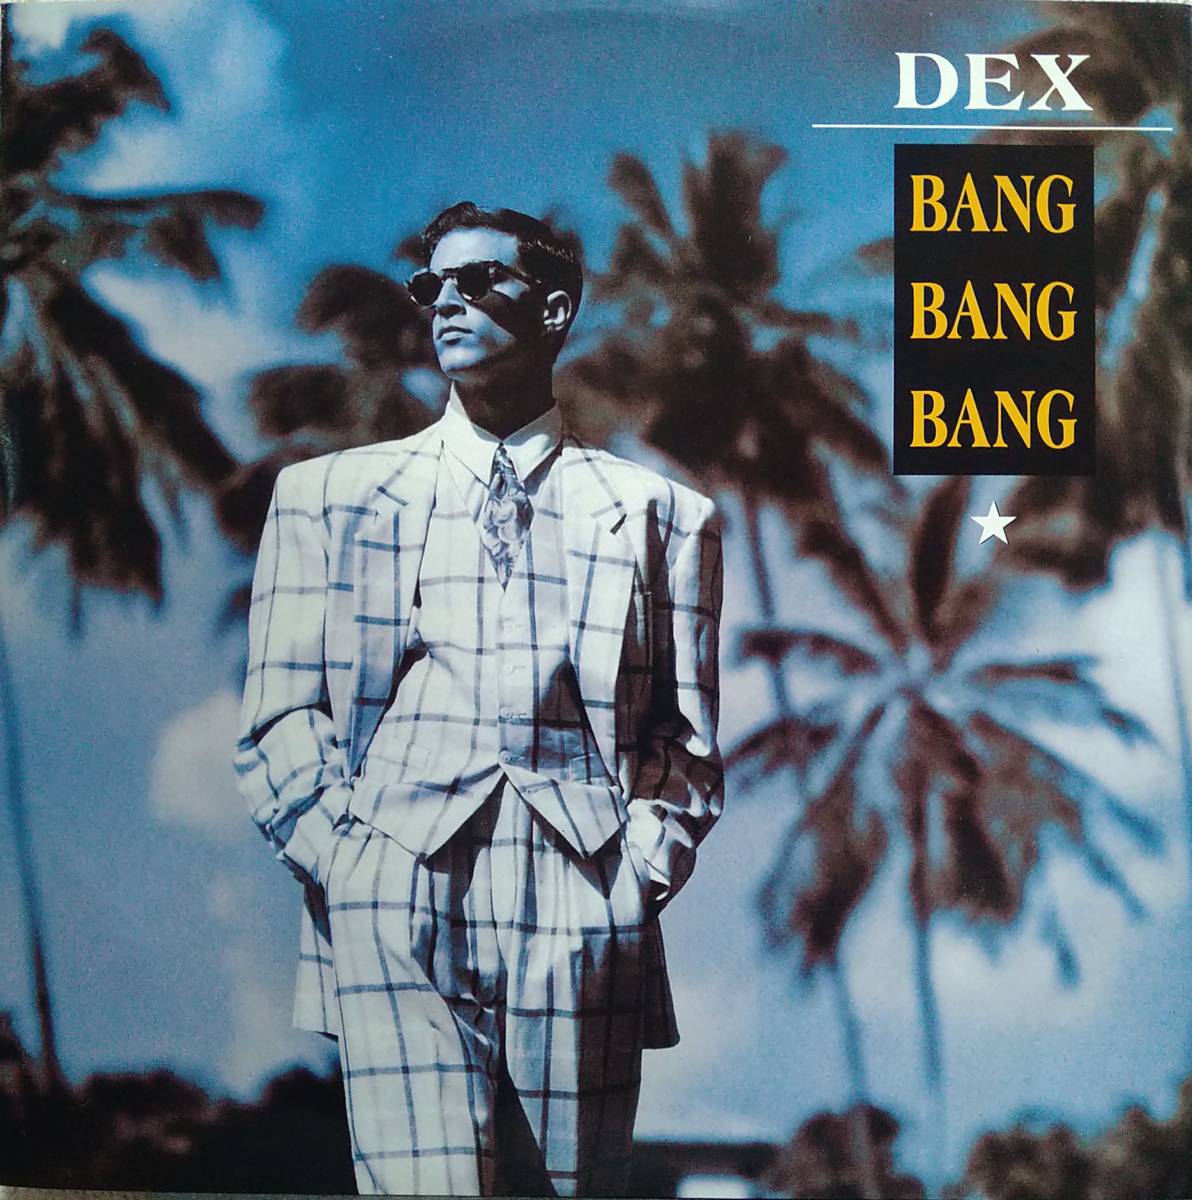 【12's Eurobeat Hi-NRG】Dex「Bang Bang Bang」オリジナル Italy盤_ジャケット